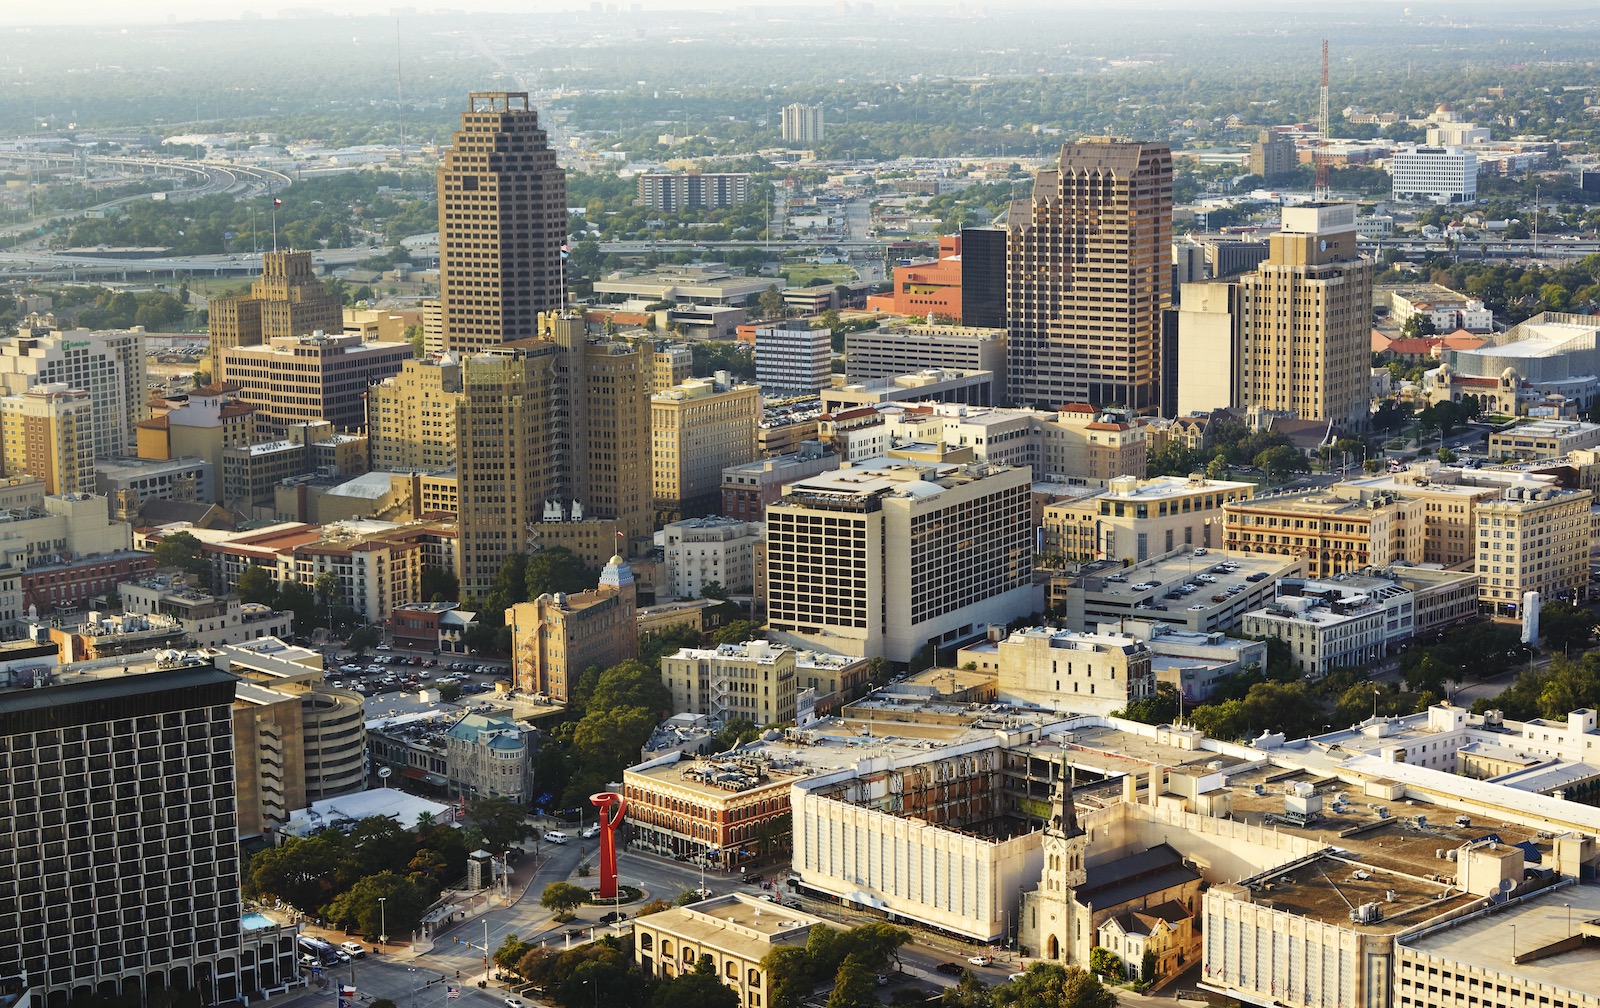 City skyline of San Antonio.